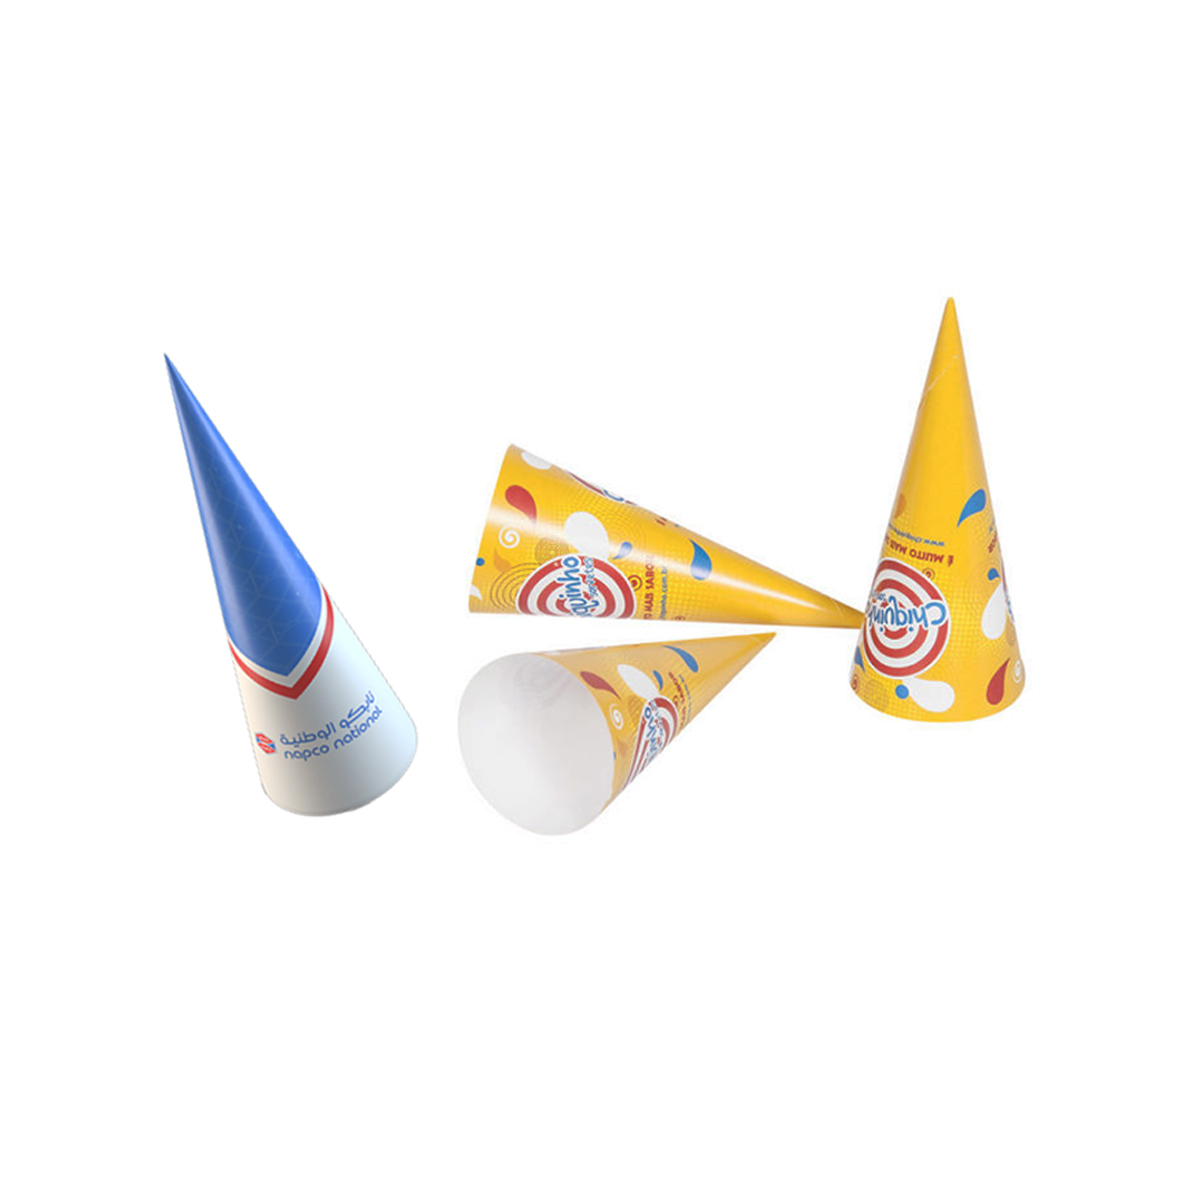 Custom Cone Sleeve Packaging